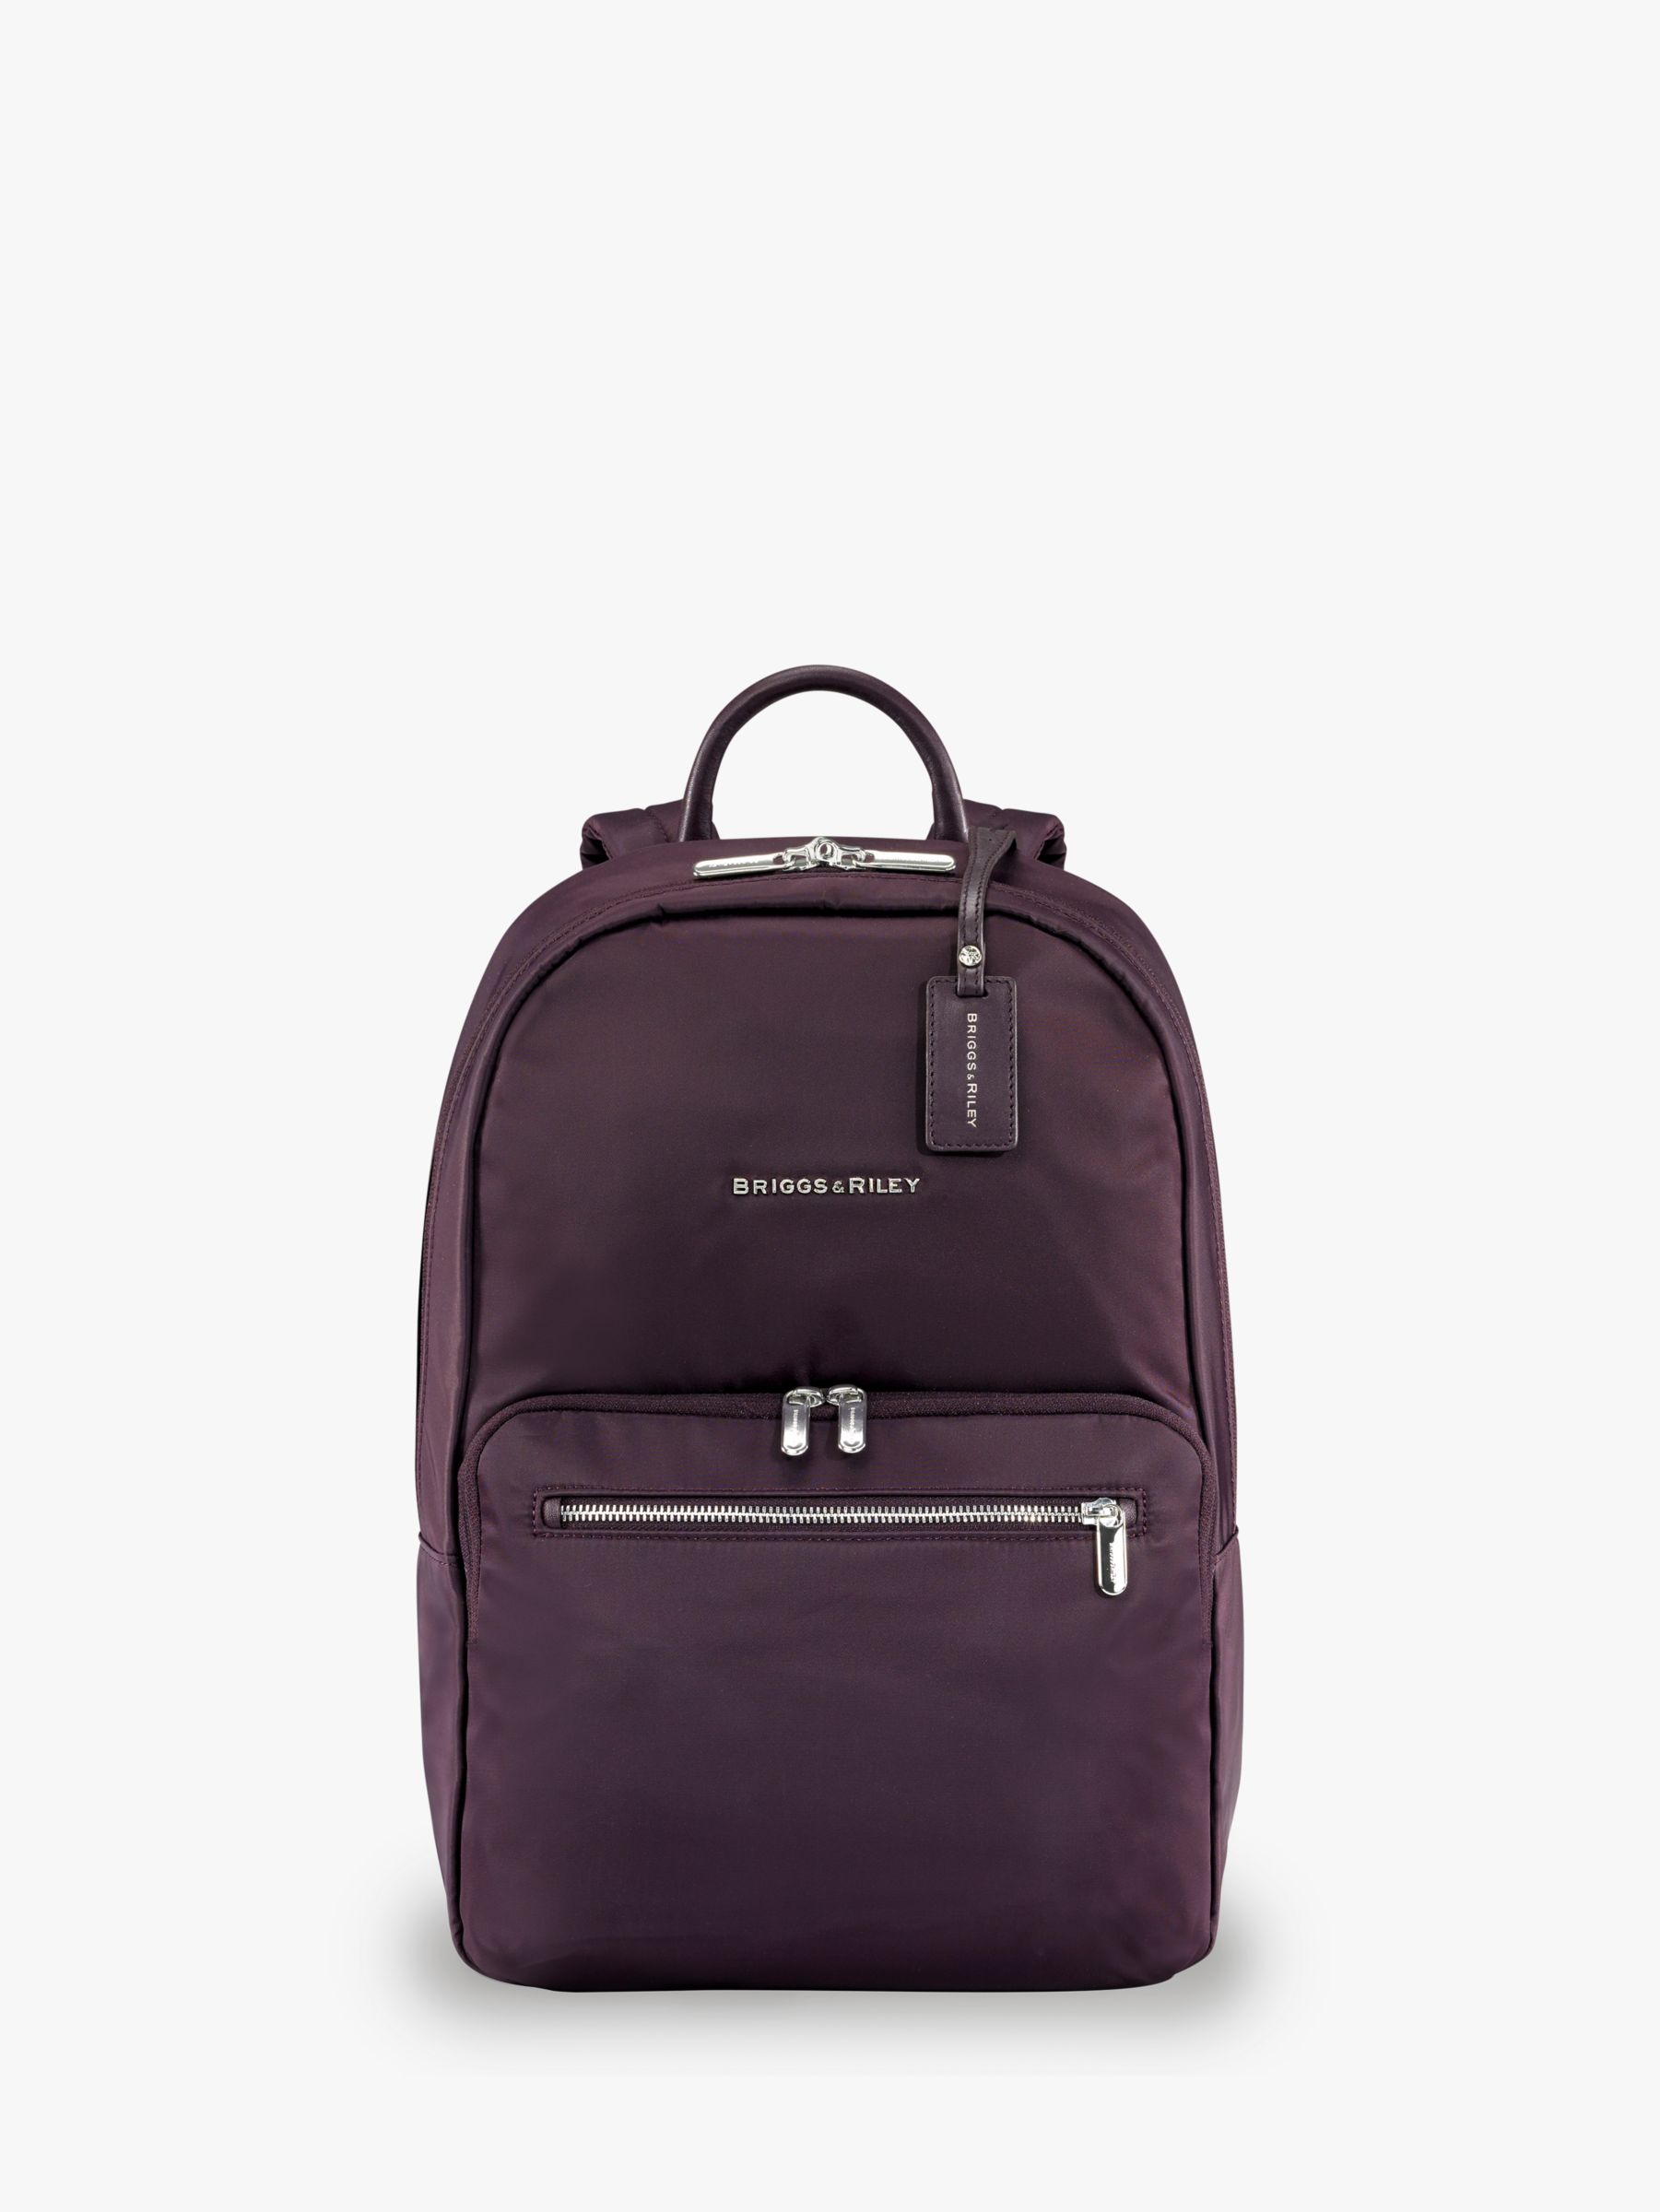 Briggs & Riley Rhapsody Essential Backpack at John Lewis & Partners